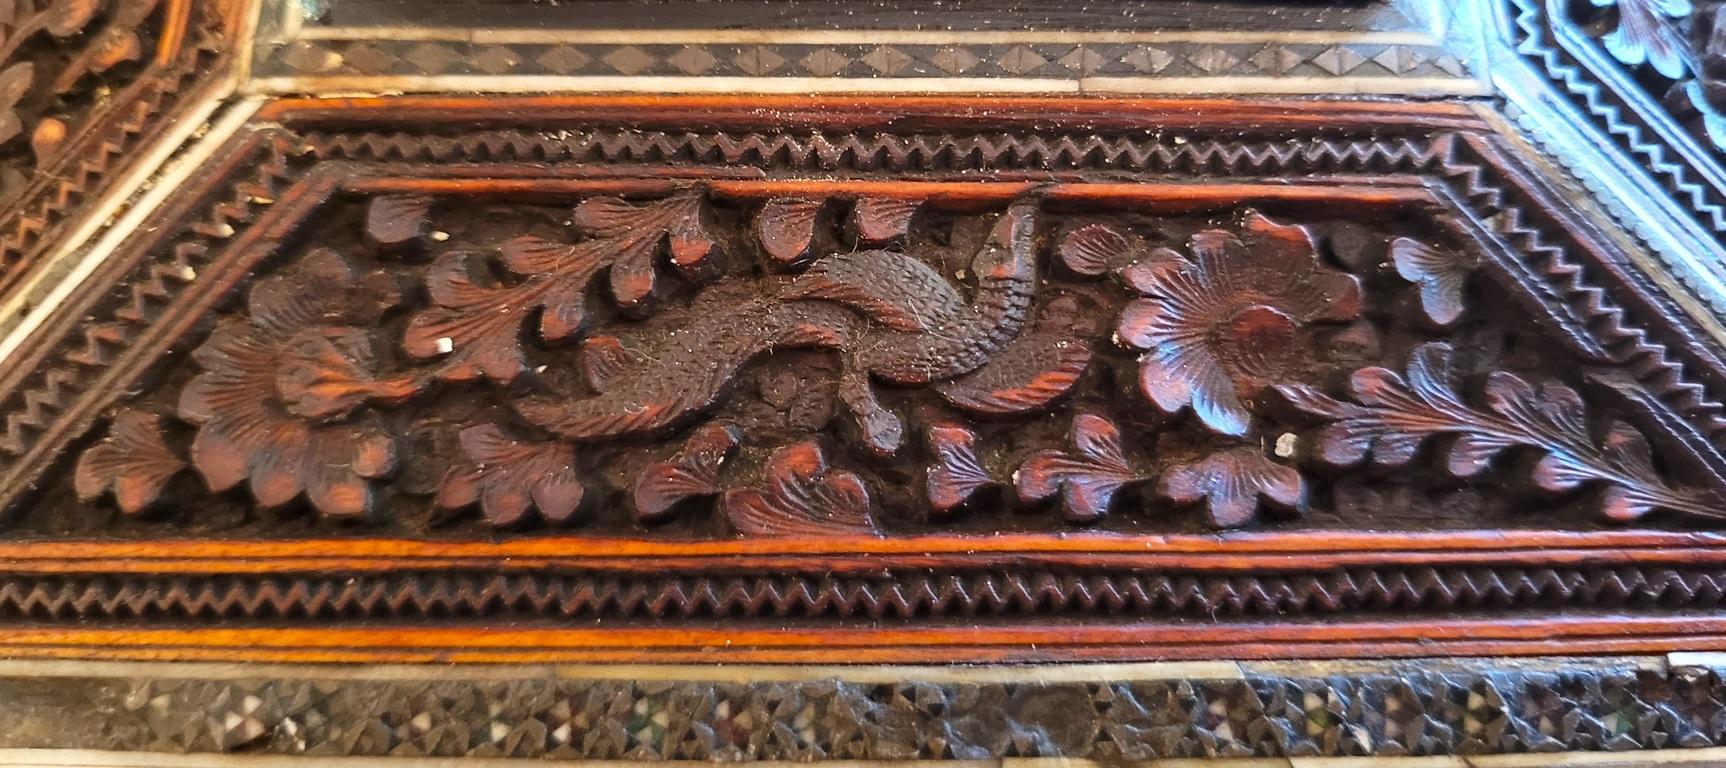 PRÄSENTIEREN SIE EINEN SCHÖNEN KASTEN aus dem 19. Jh. aus anglo-indischem Padouk-Holz mit Sadeli-Mosaik-Intarsien zum Nähen.

Hergestellt in Bombay, Indien, um 1880.

Die Schatulle ist aus Sandelholz gefertigt und hat auf allen Seiten stark